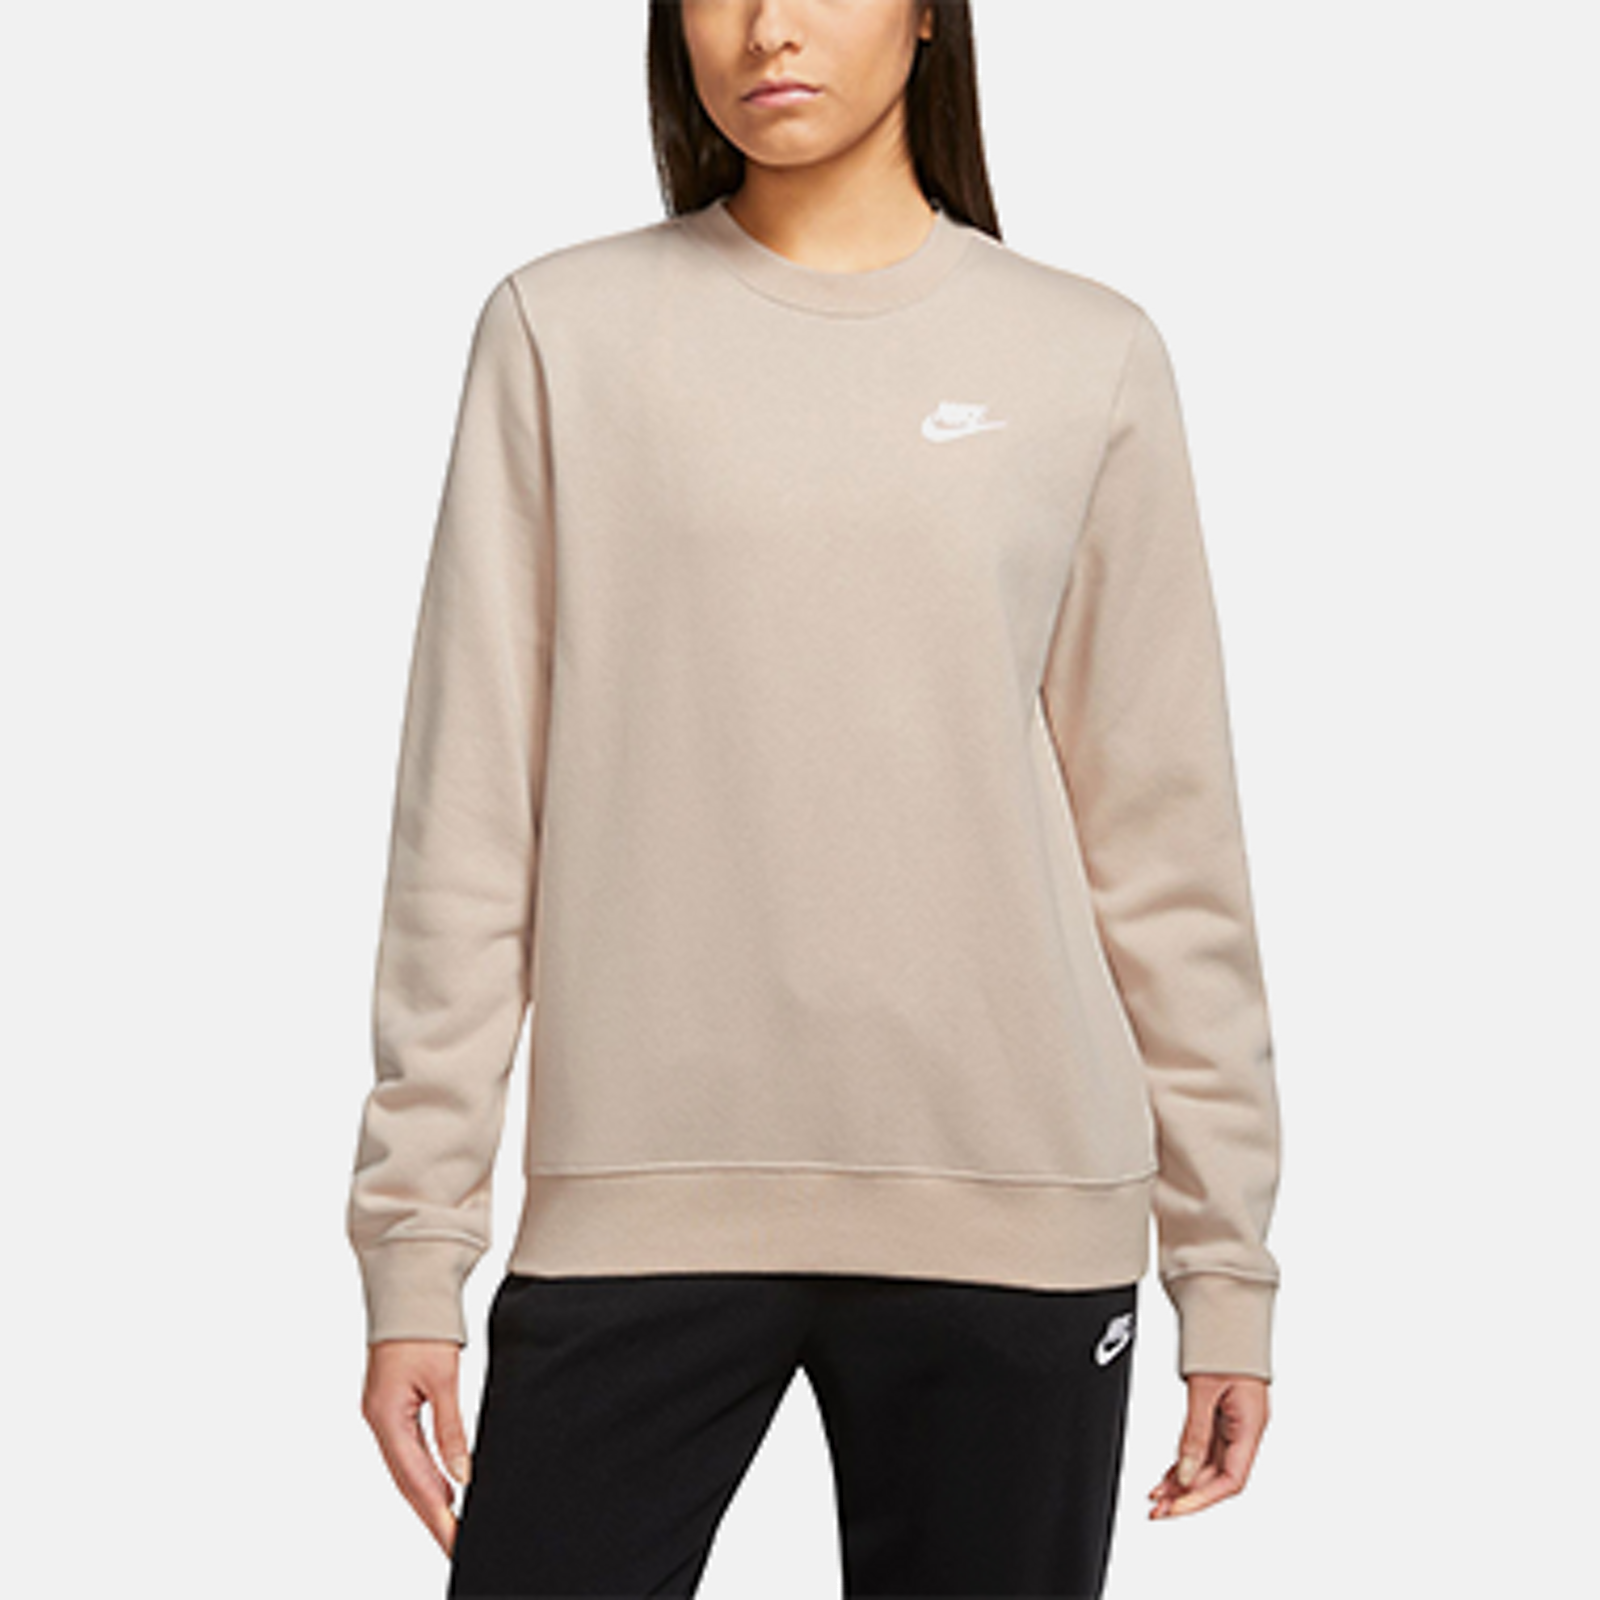 Women's Hoodies & Sweatshirts - Macy's